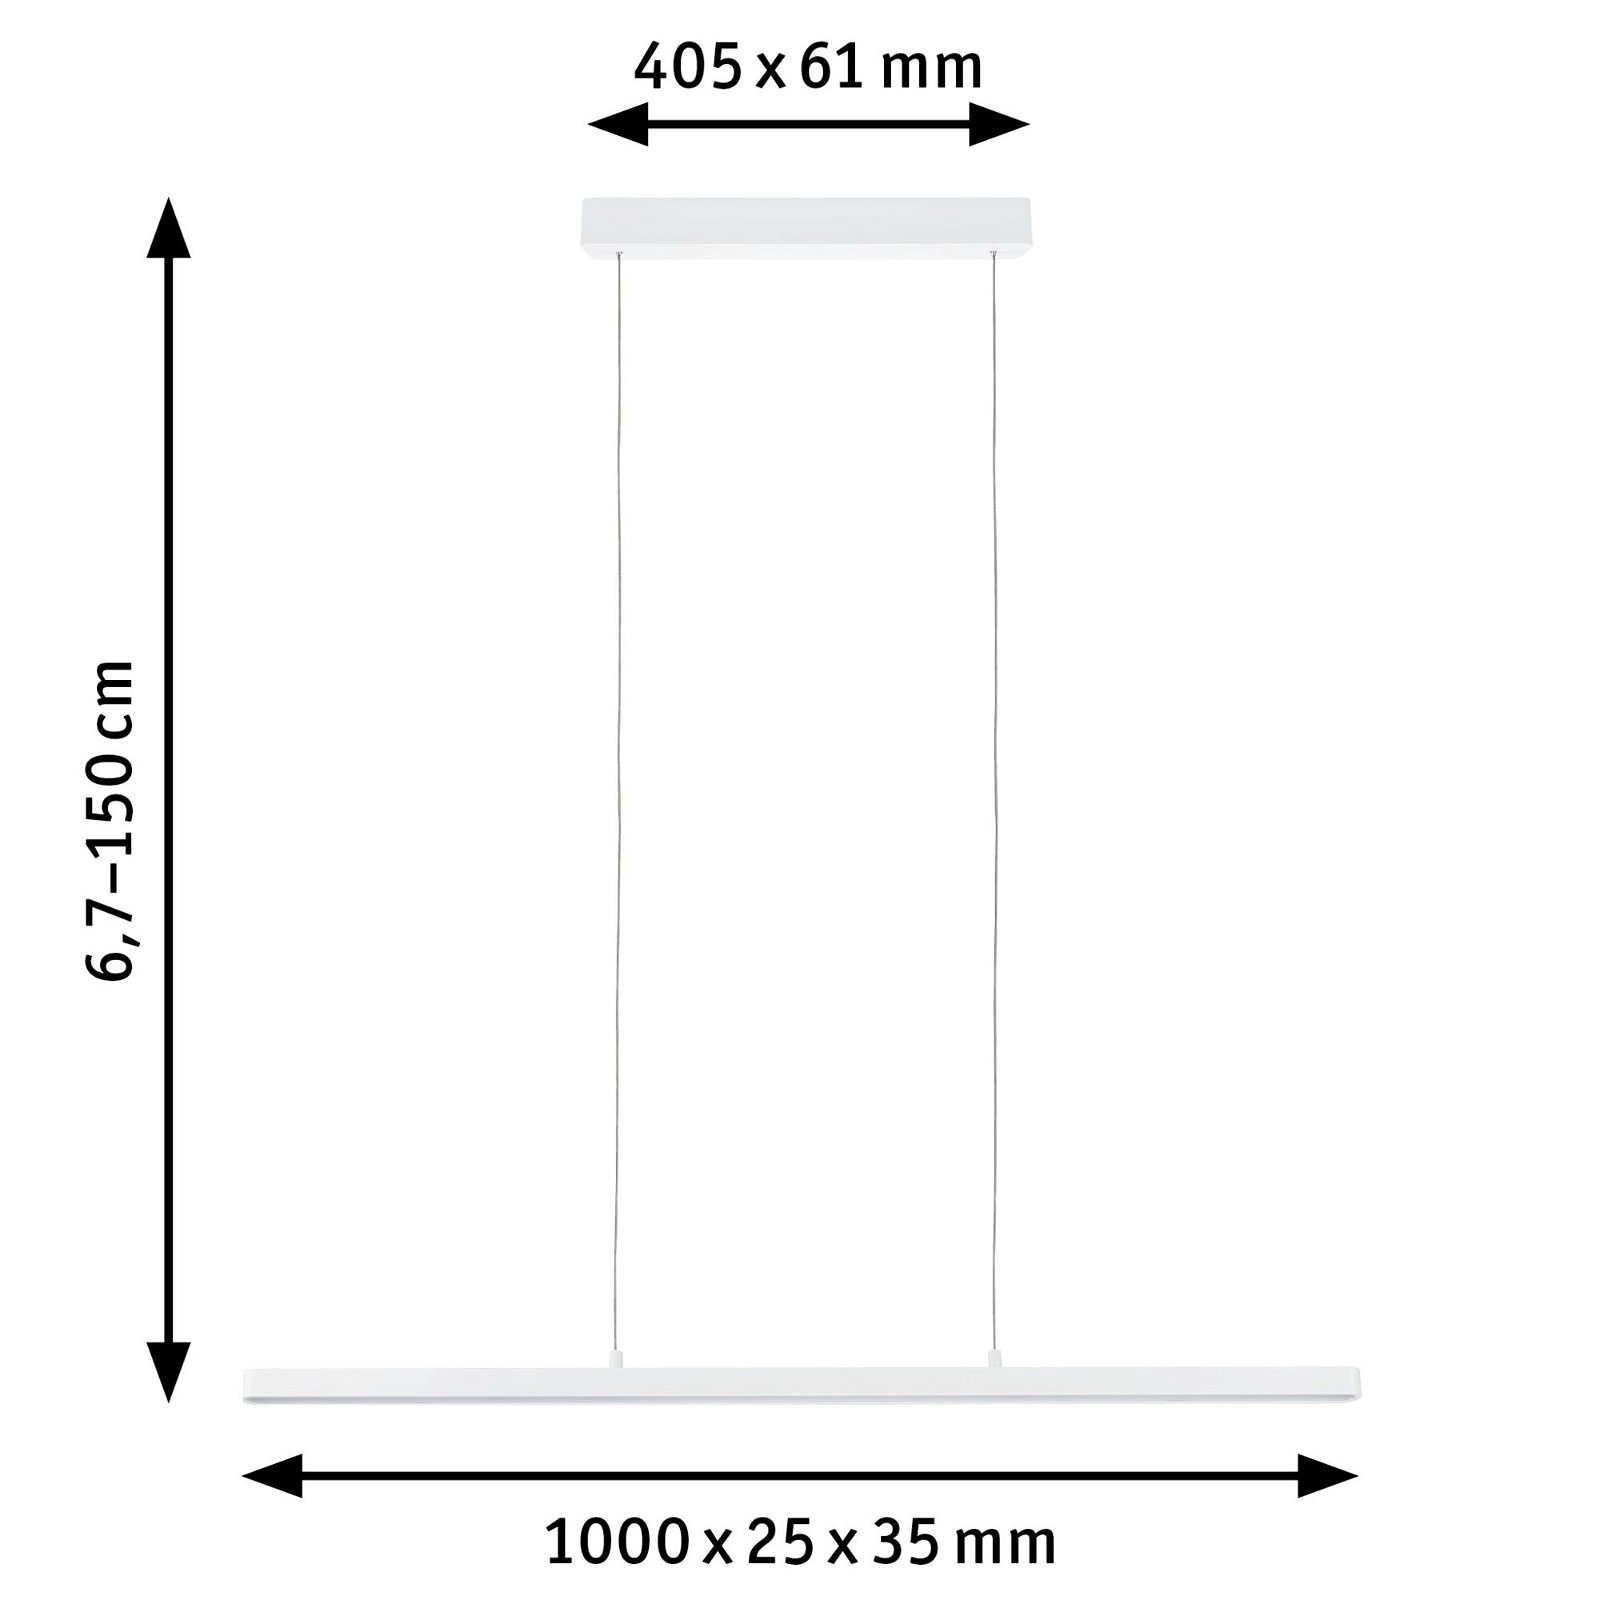 LED-hanglamp Smart Home Zigbee 3.0 Lento Tunable White 3x2100lm 3x13,5W Wit mat dimbaar